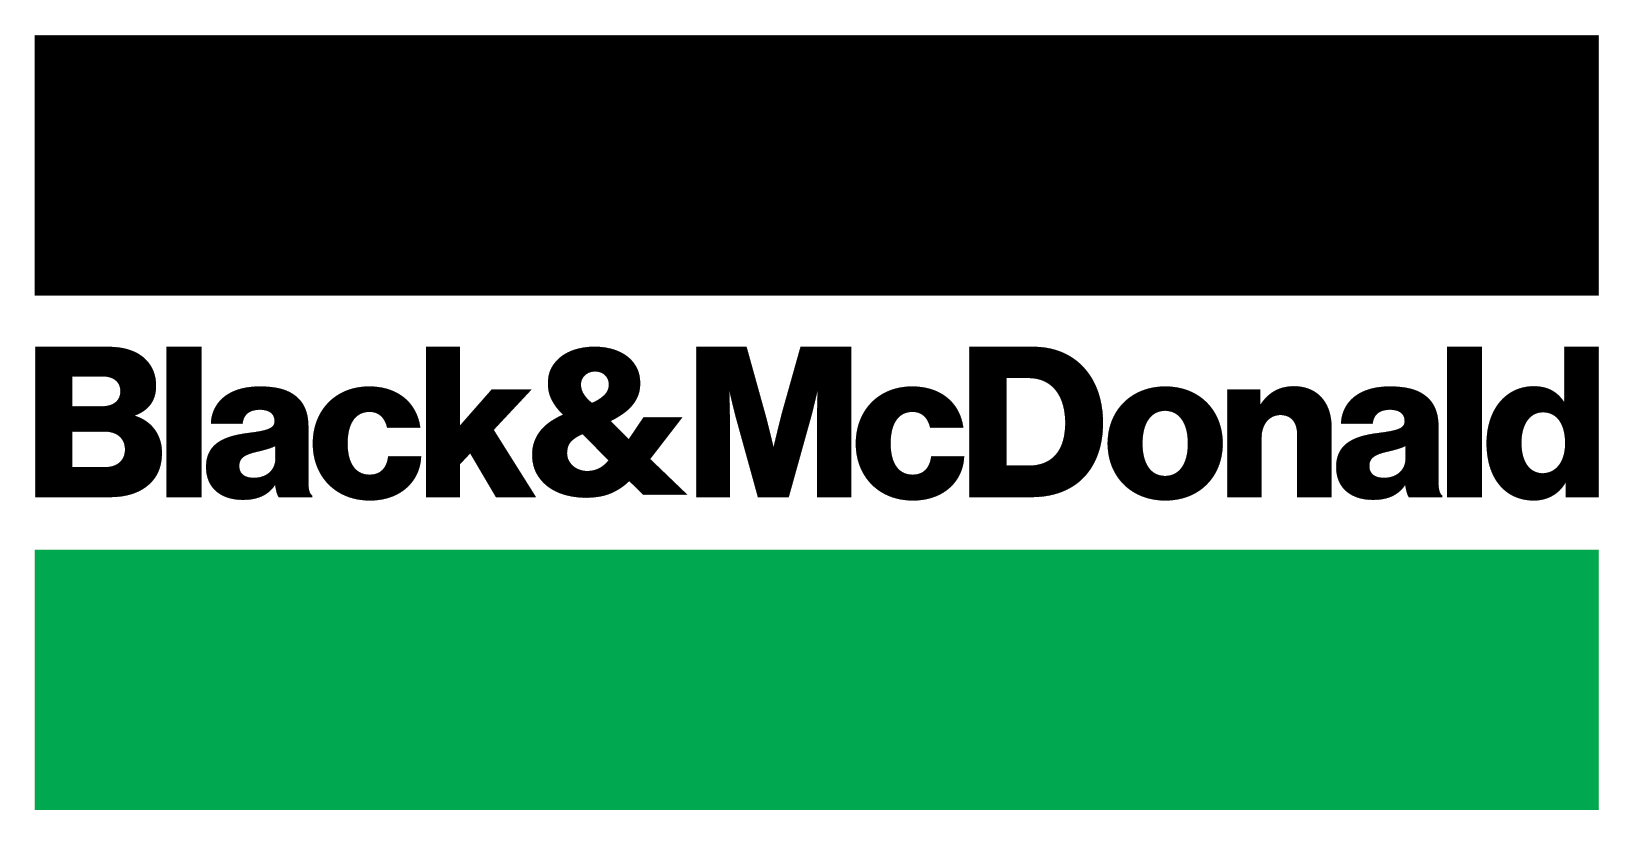 Black and mcdonald canada jobs